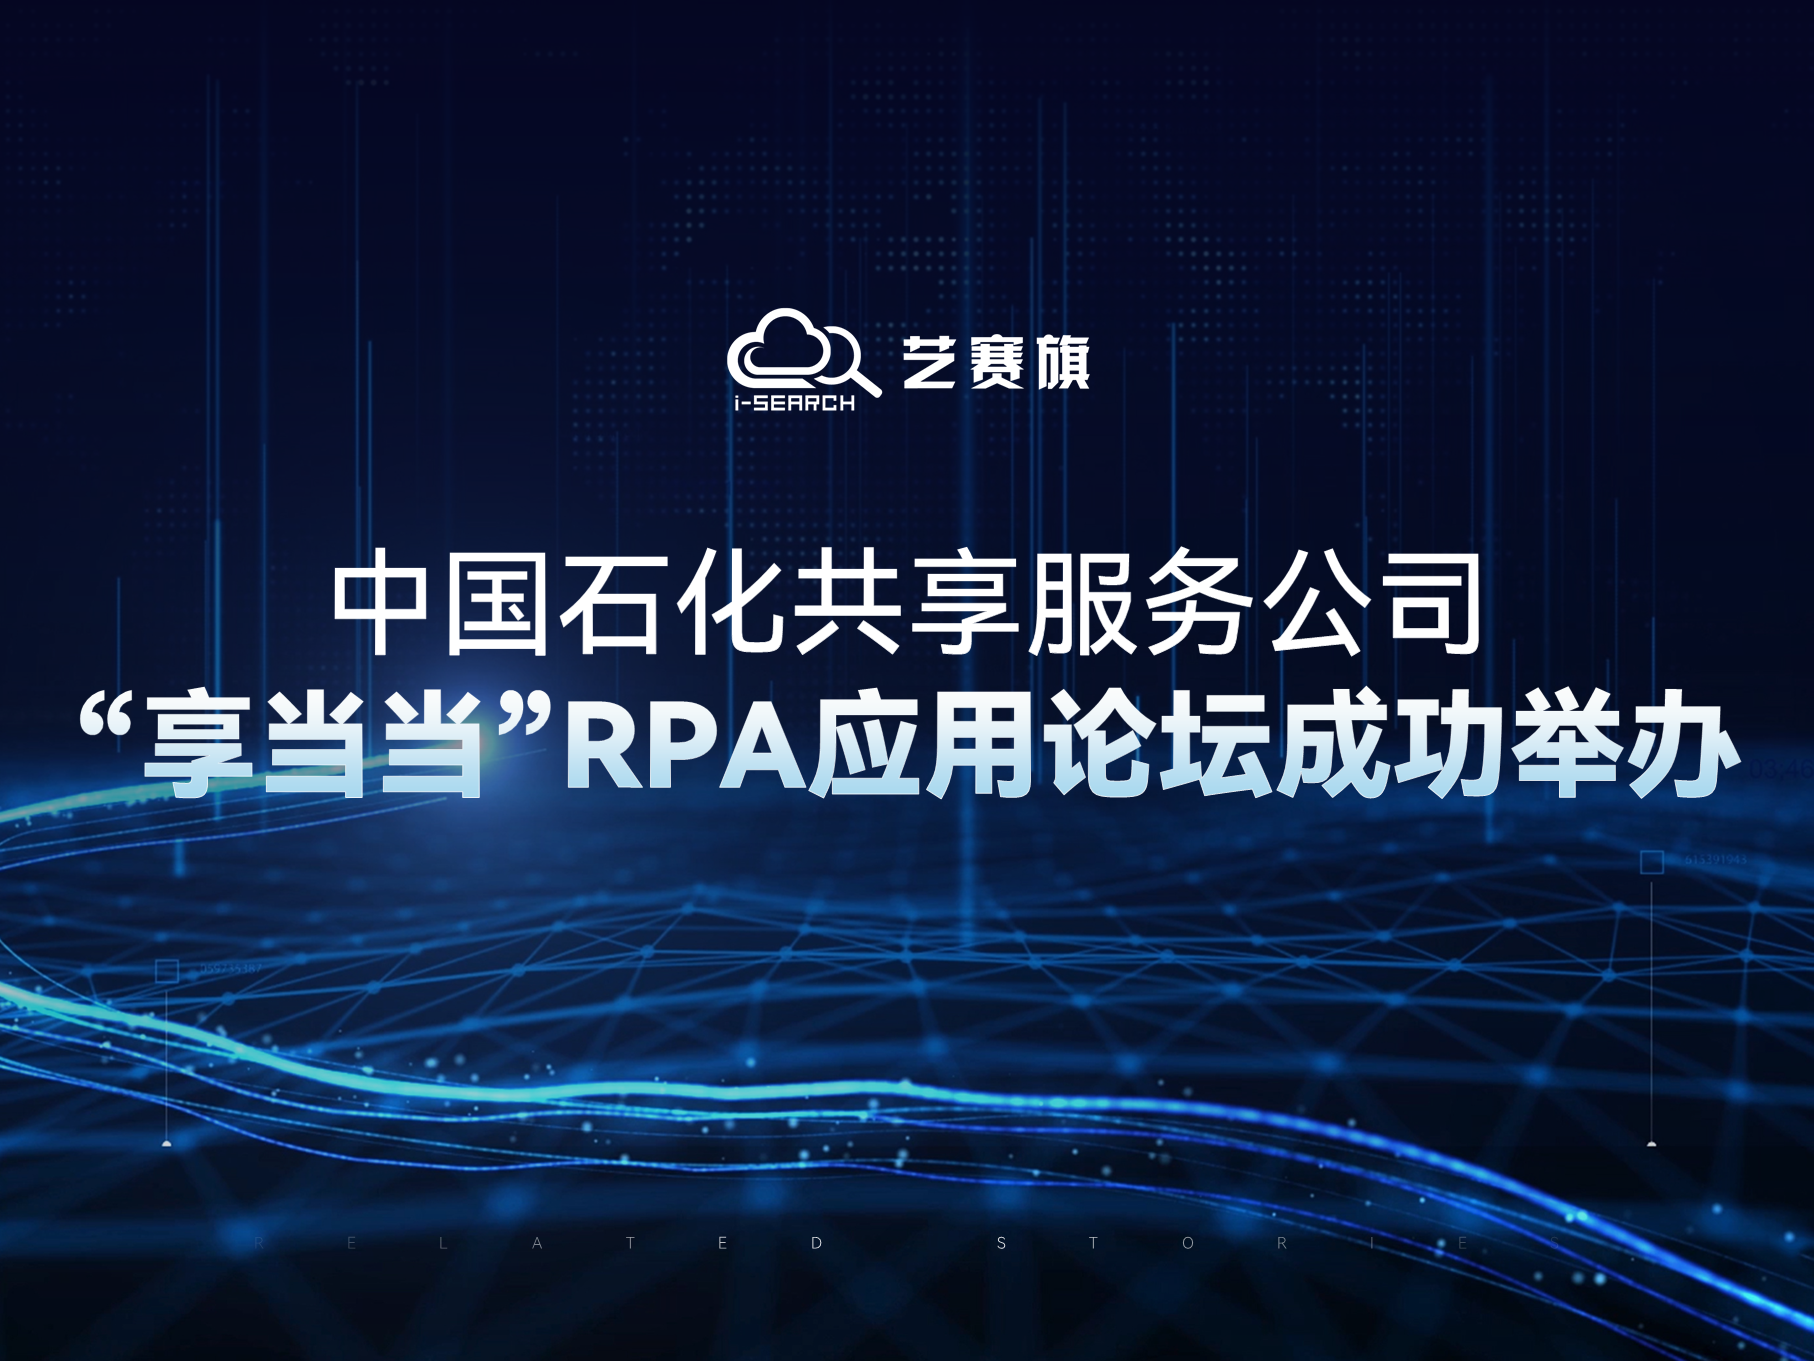 中国石化共享服务公司“享当当”RPA应用论坛成功举办